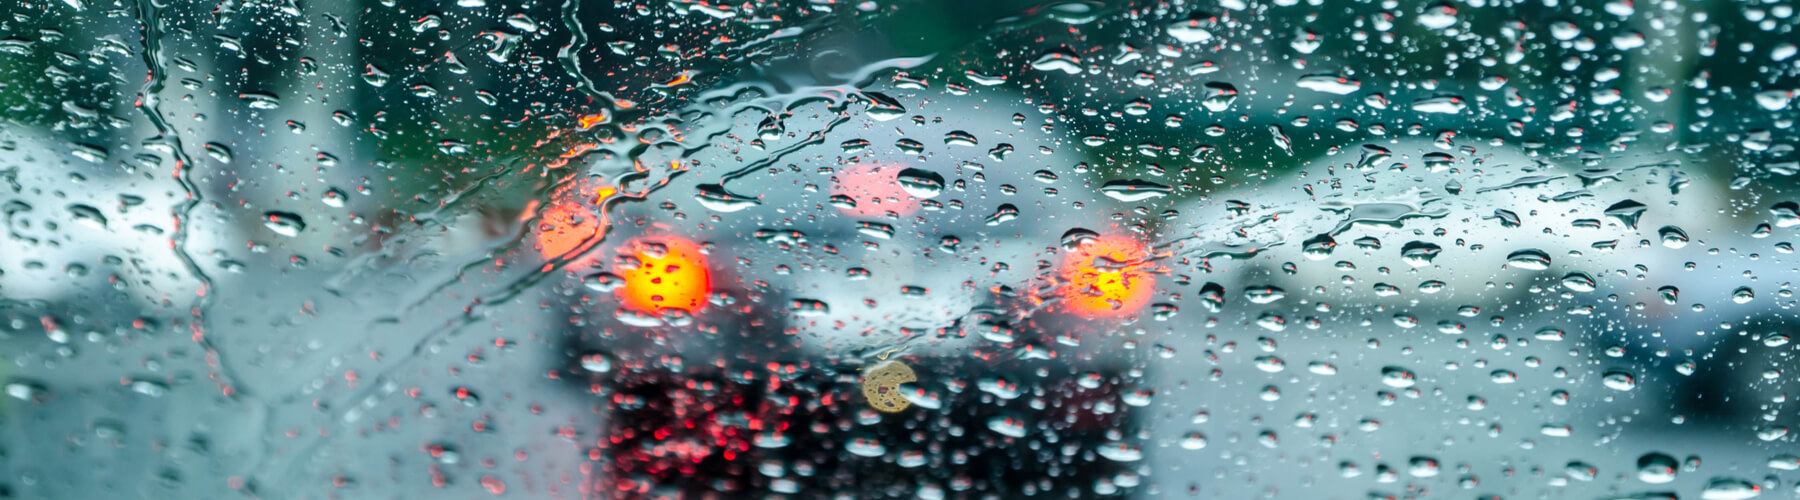 rain droplets on car windshield 